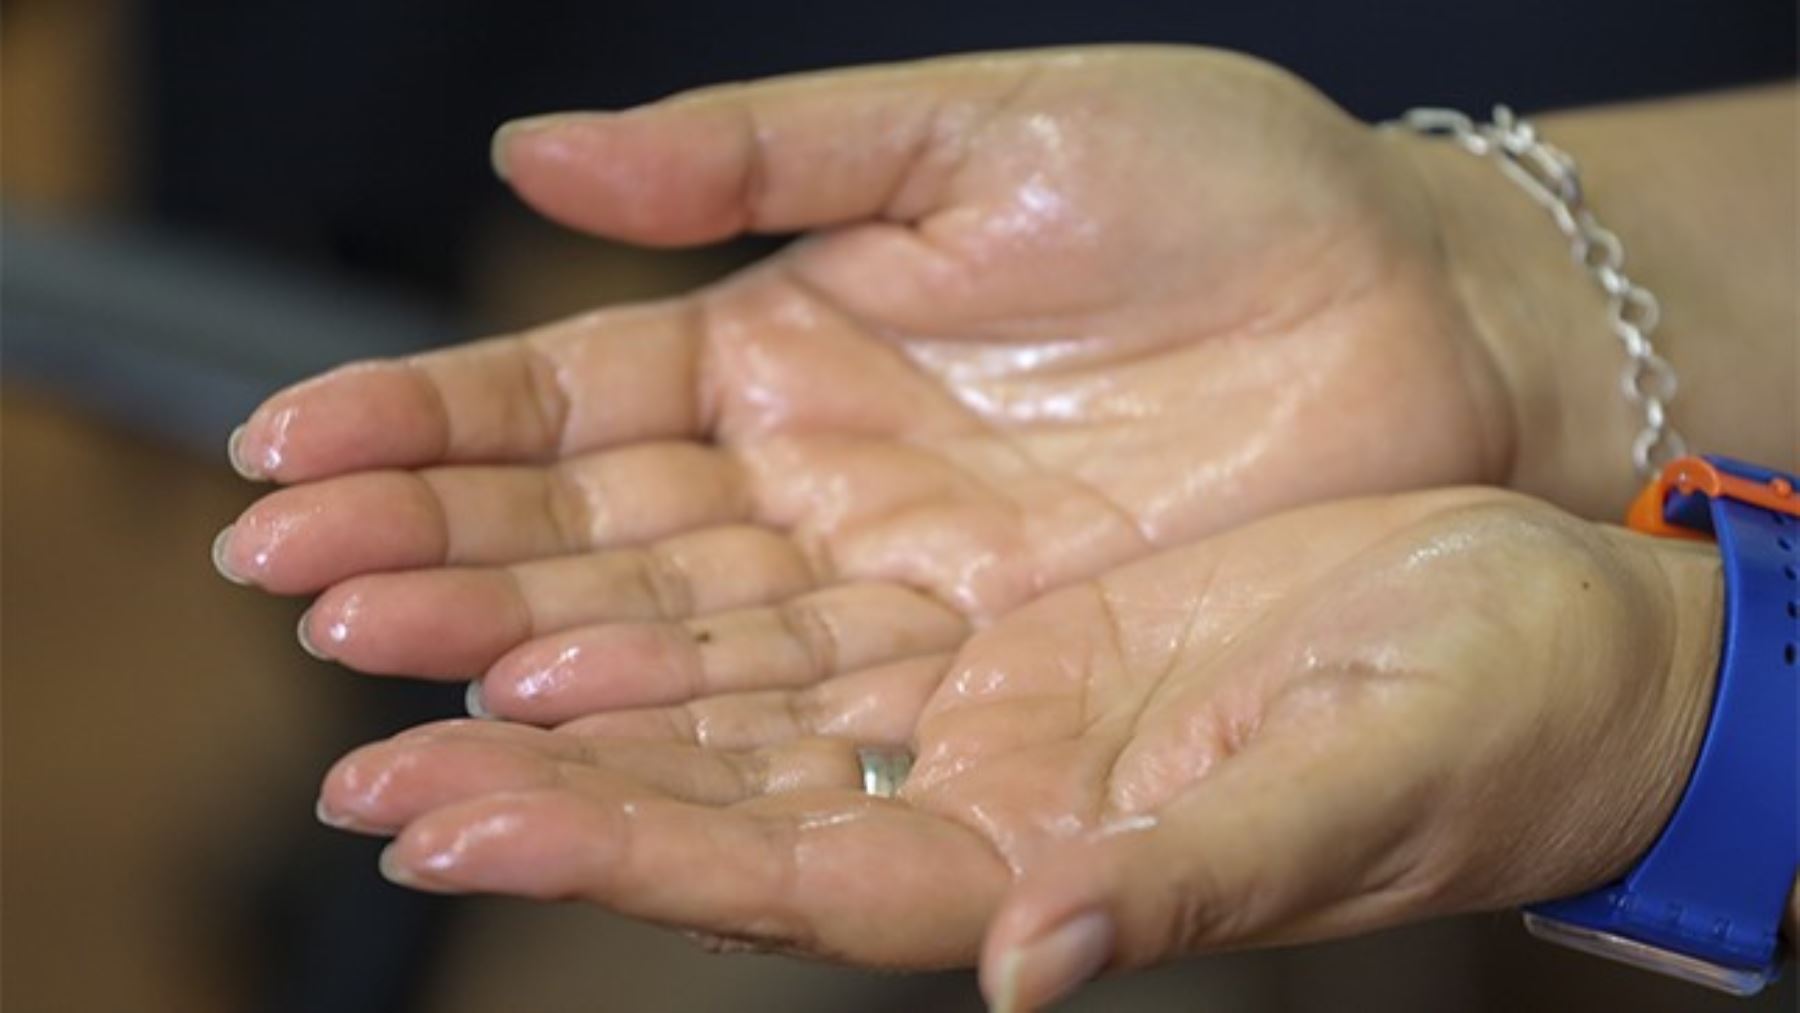 La excesiva sudoración de manos está relacionada a sudoración de cara y otras partes del cuerpo.